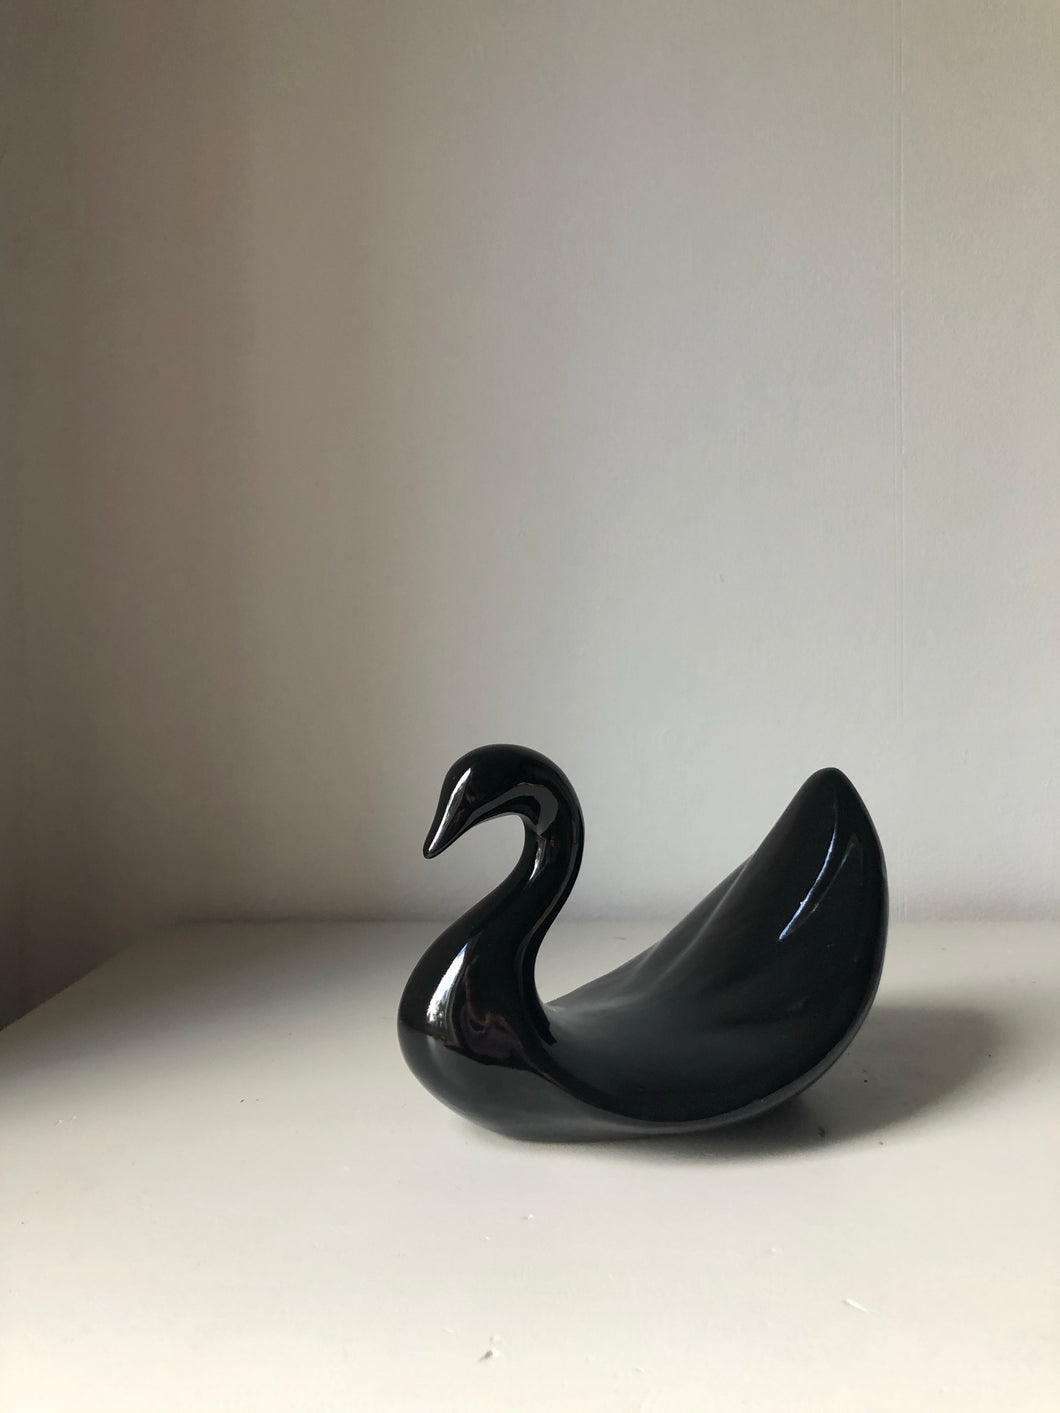 Graceful Black Porcelain Swan